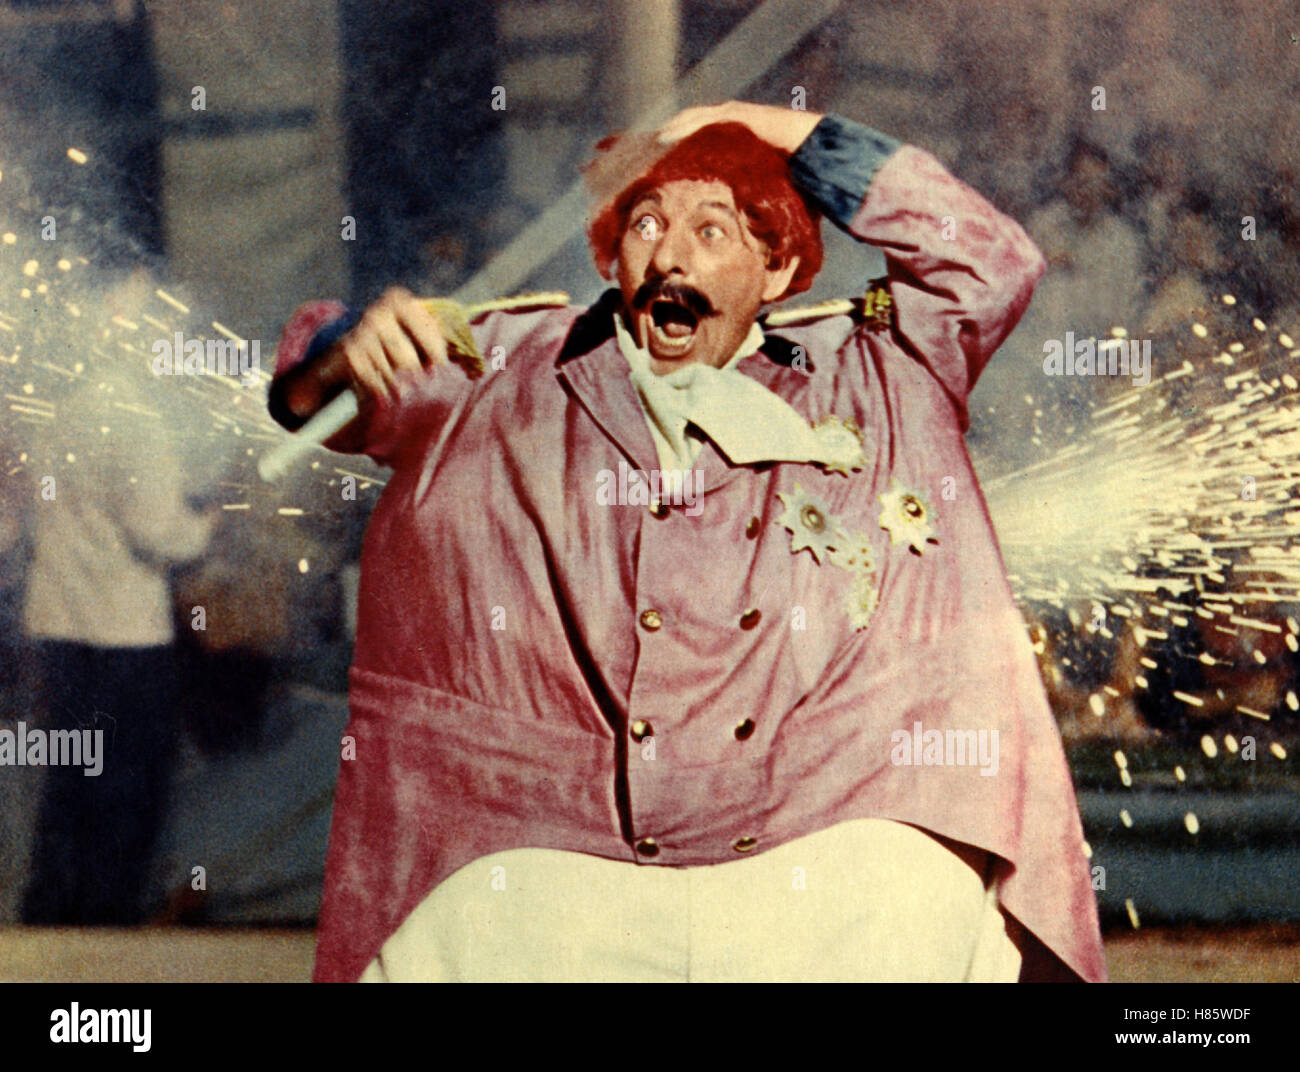 König der Spaßmacher, (MERRY ANDREW) USA 1958, Regie: Michael Kidd, DANNY KAYE, Stichwort: Clown, Feuerwerk Stock Photo